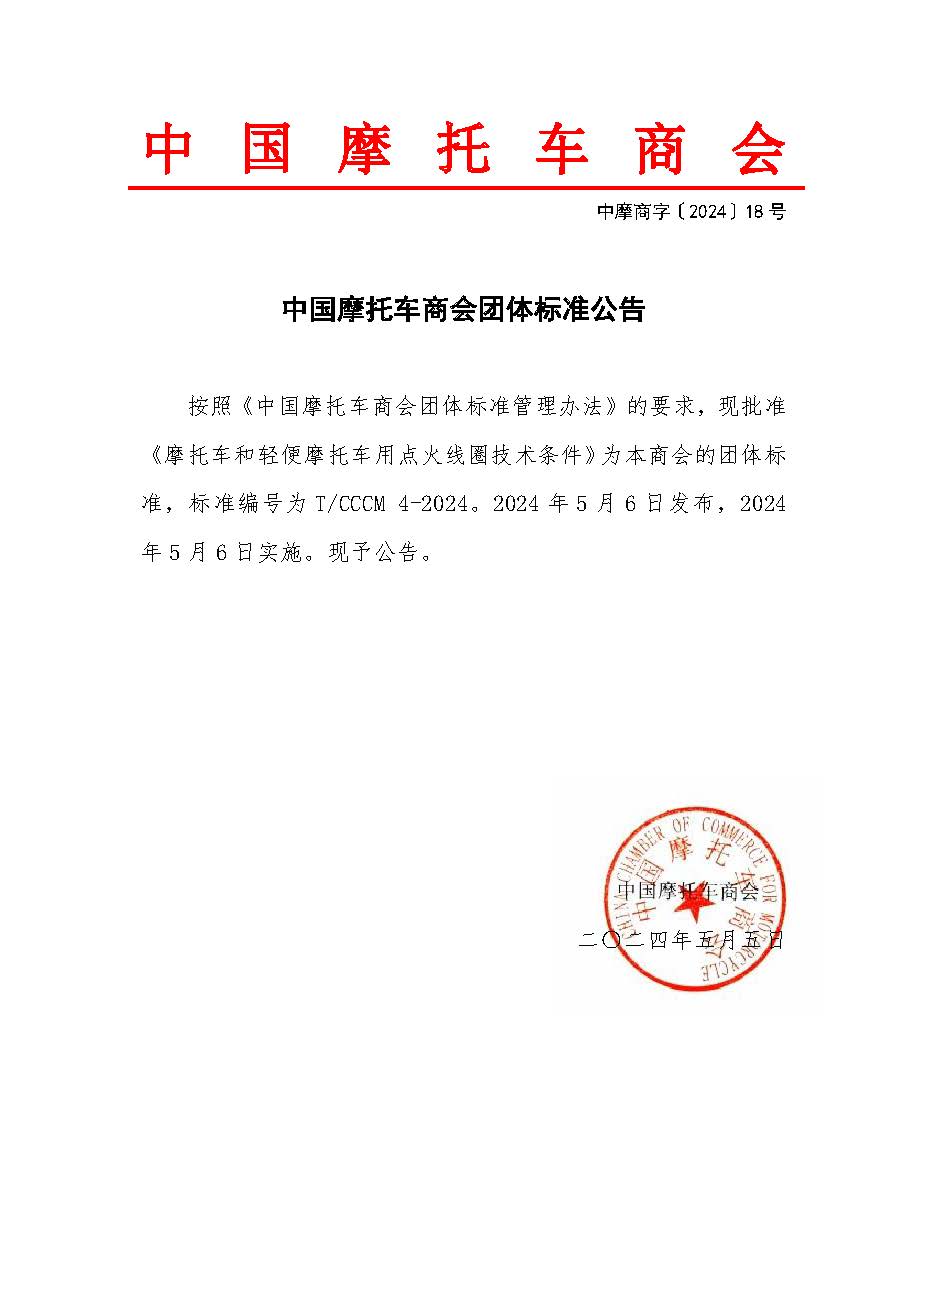 2024.0426中国摩托车商会团体标准公告.jpg